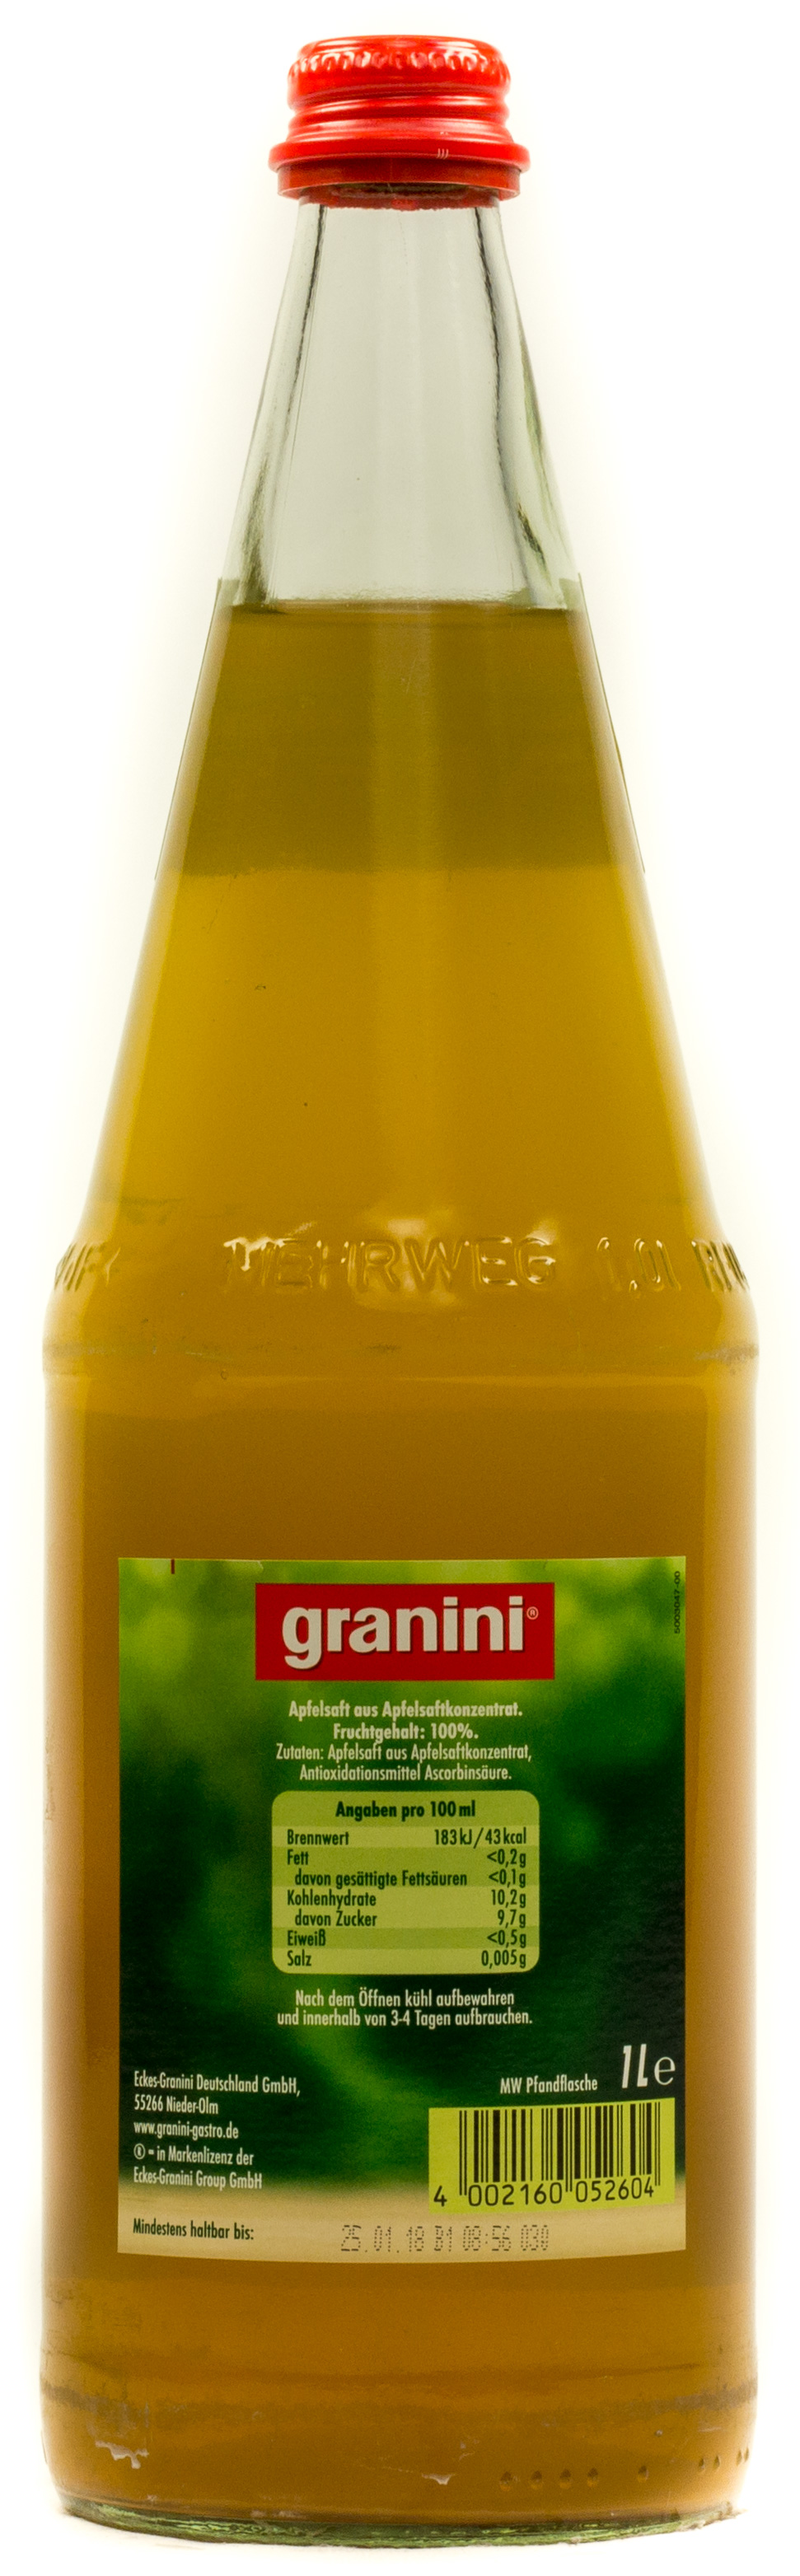 Granini Trinkgenuss naturtrüber Apfel Kasten 6 x 1 l Glas Mehrweg